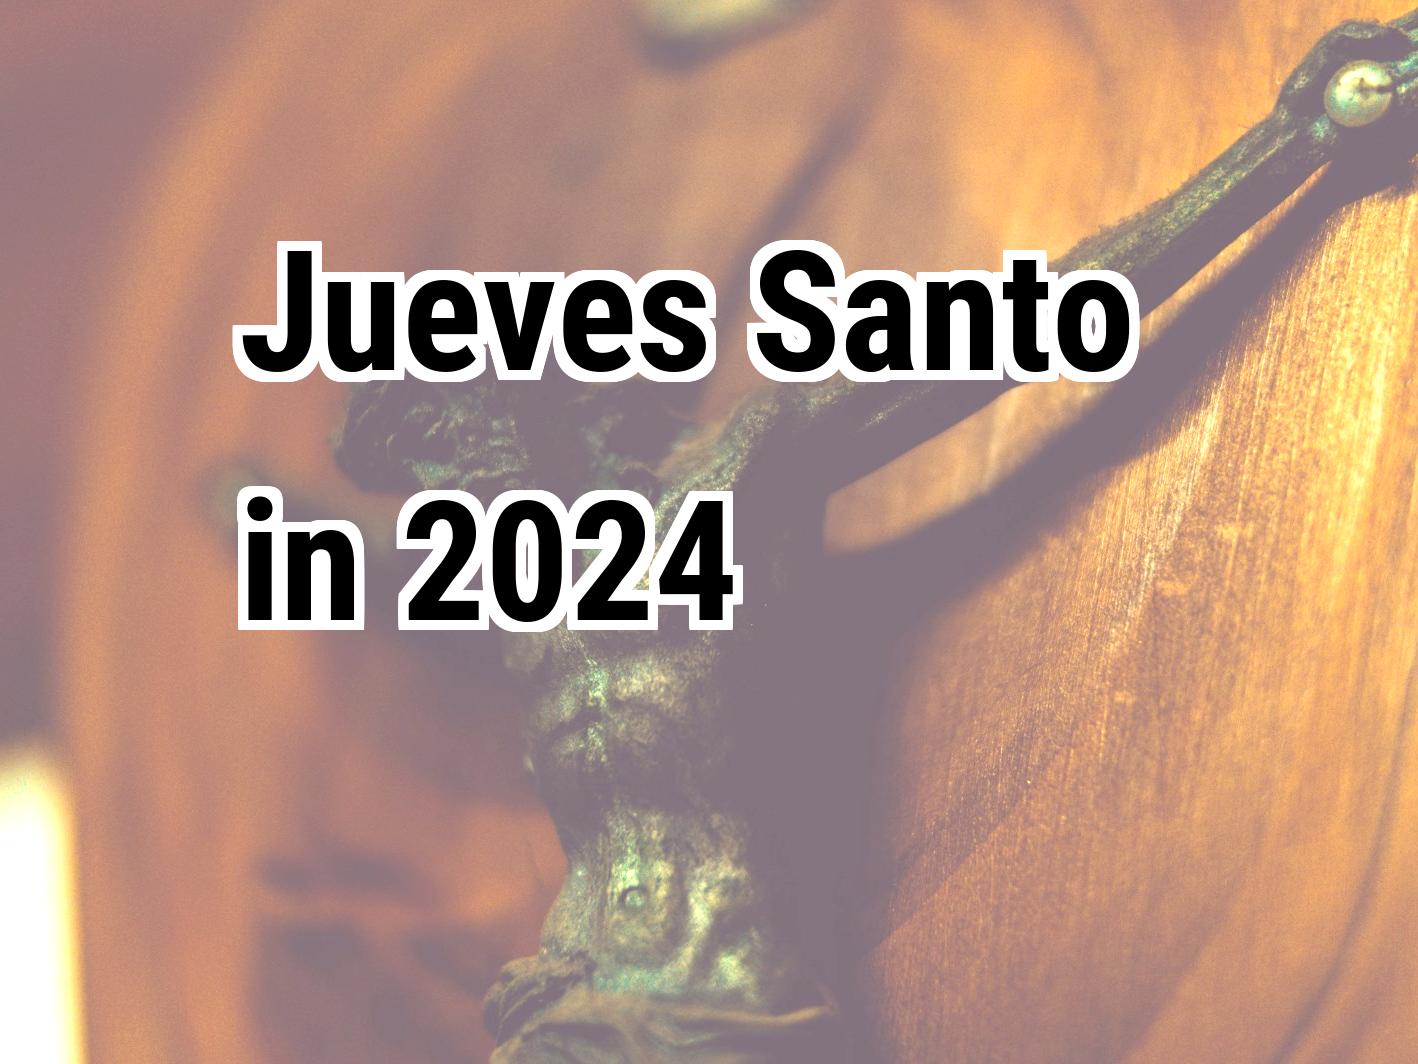 Jueves Santo 2024 Calendar Center